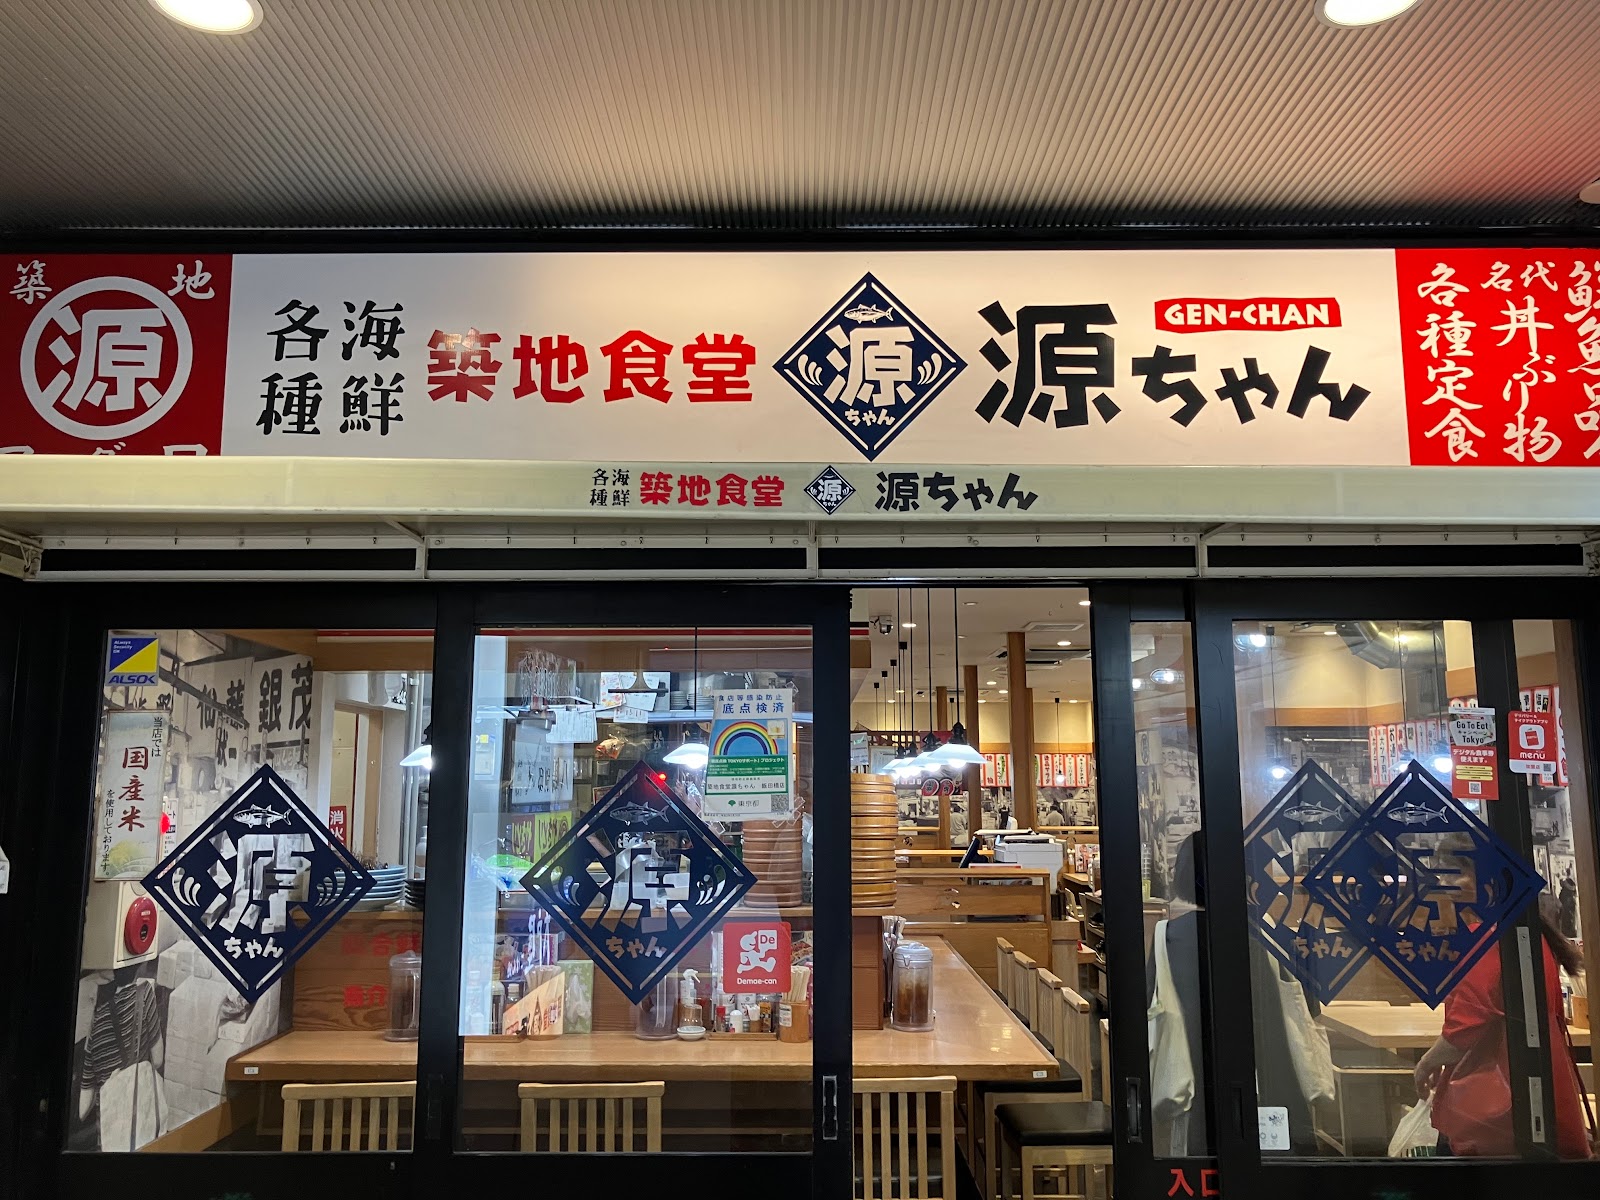 築地食堂源ちゃん 飯田橋店の風景